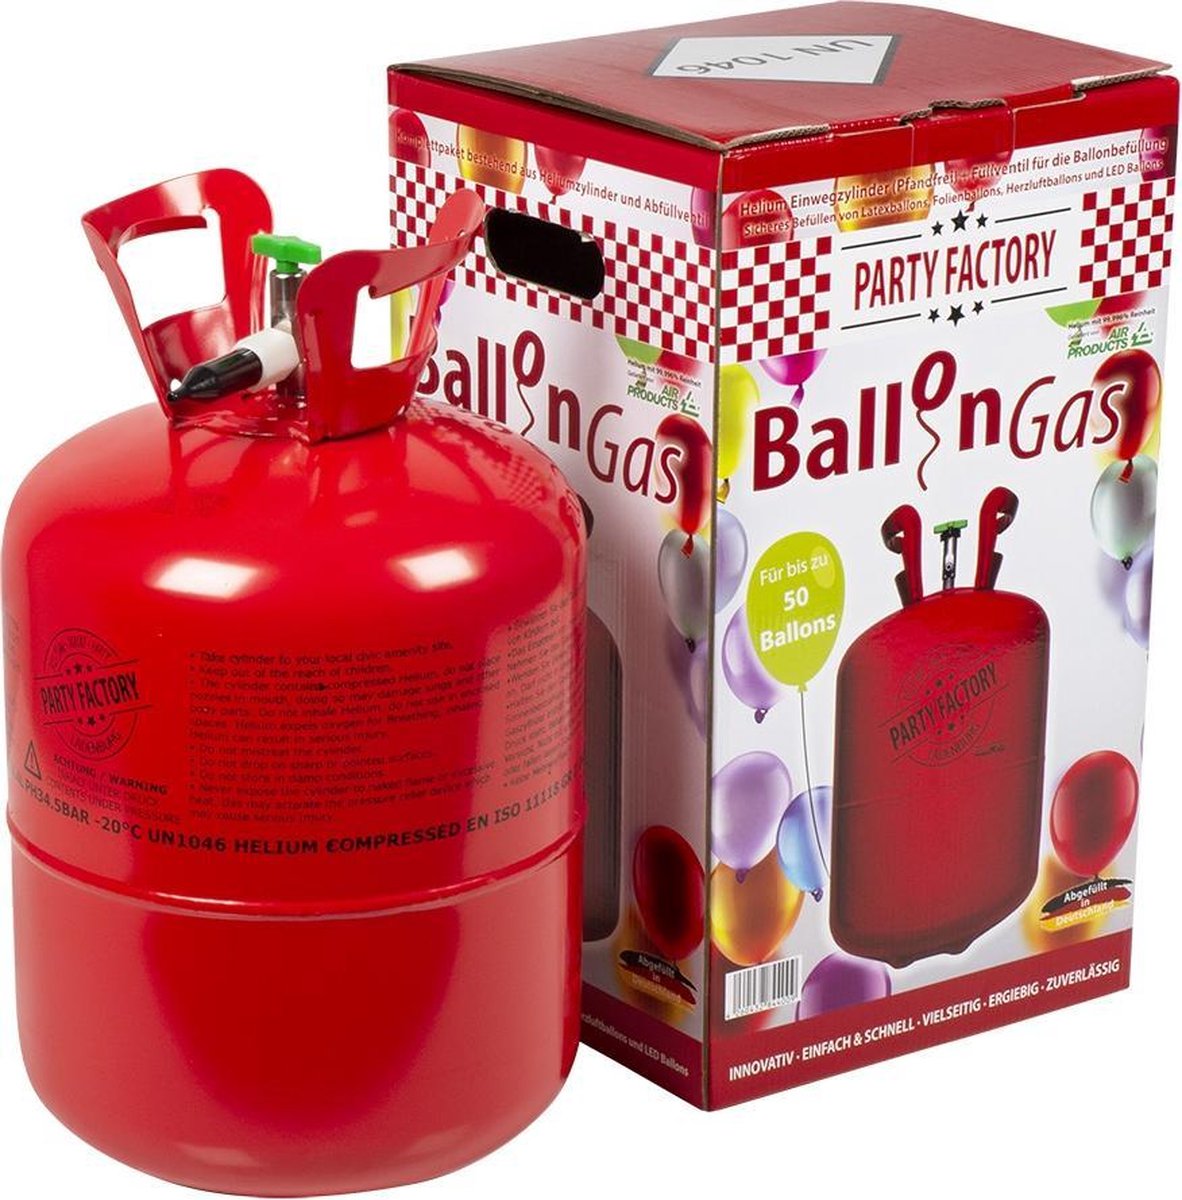 Réservoir d'hélium avec 100 ballons et ruban - Partywinkel